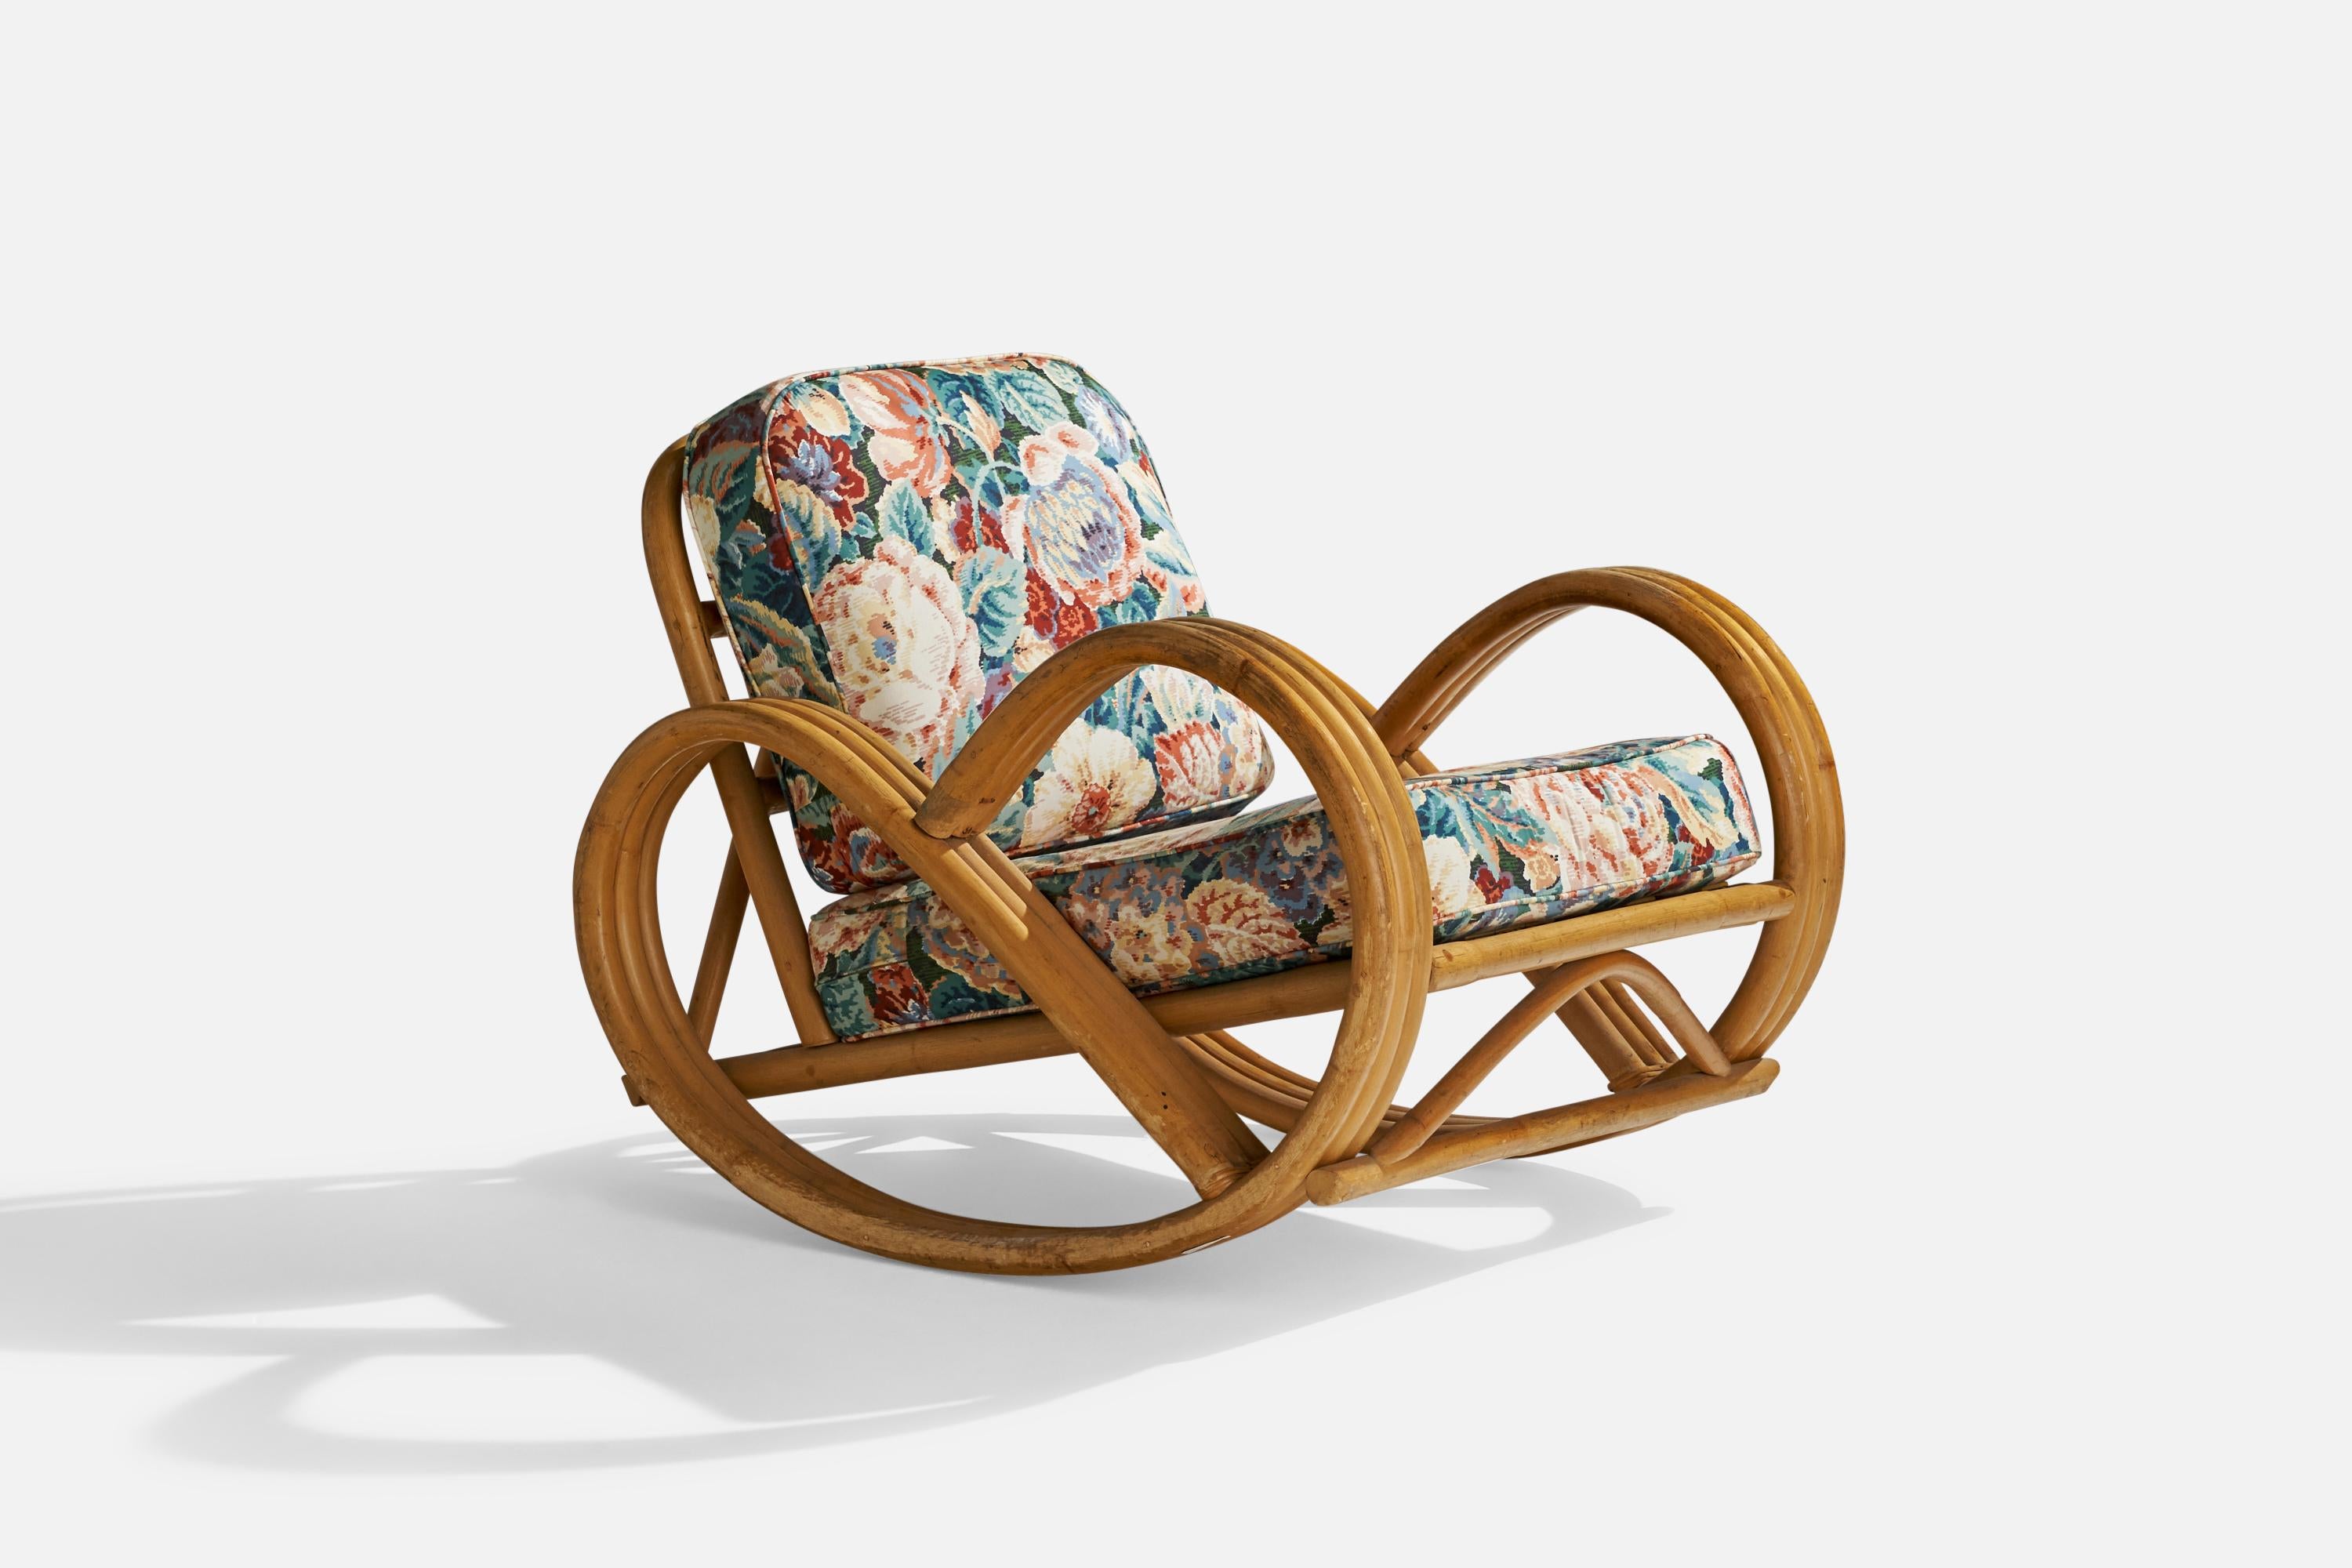 Chaise longue à bascule en bambou moulé et tissu imprimé floral, conçue et produite aux États-Unis, vers les années 1950.

hauteur du siège 14